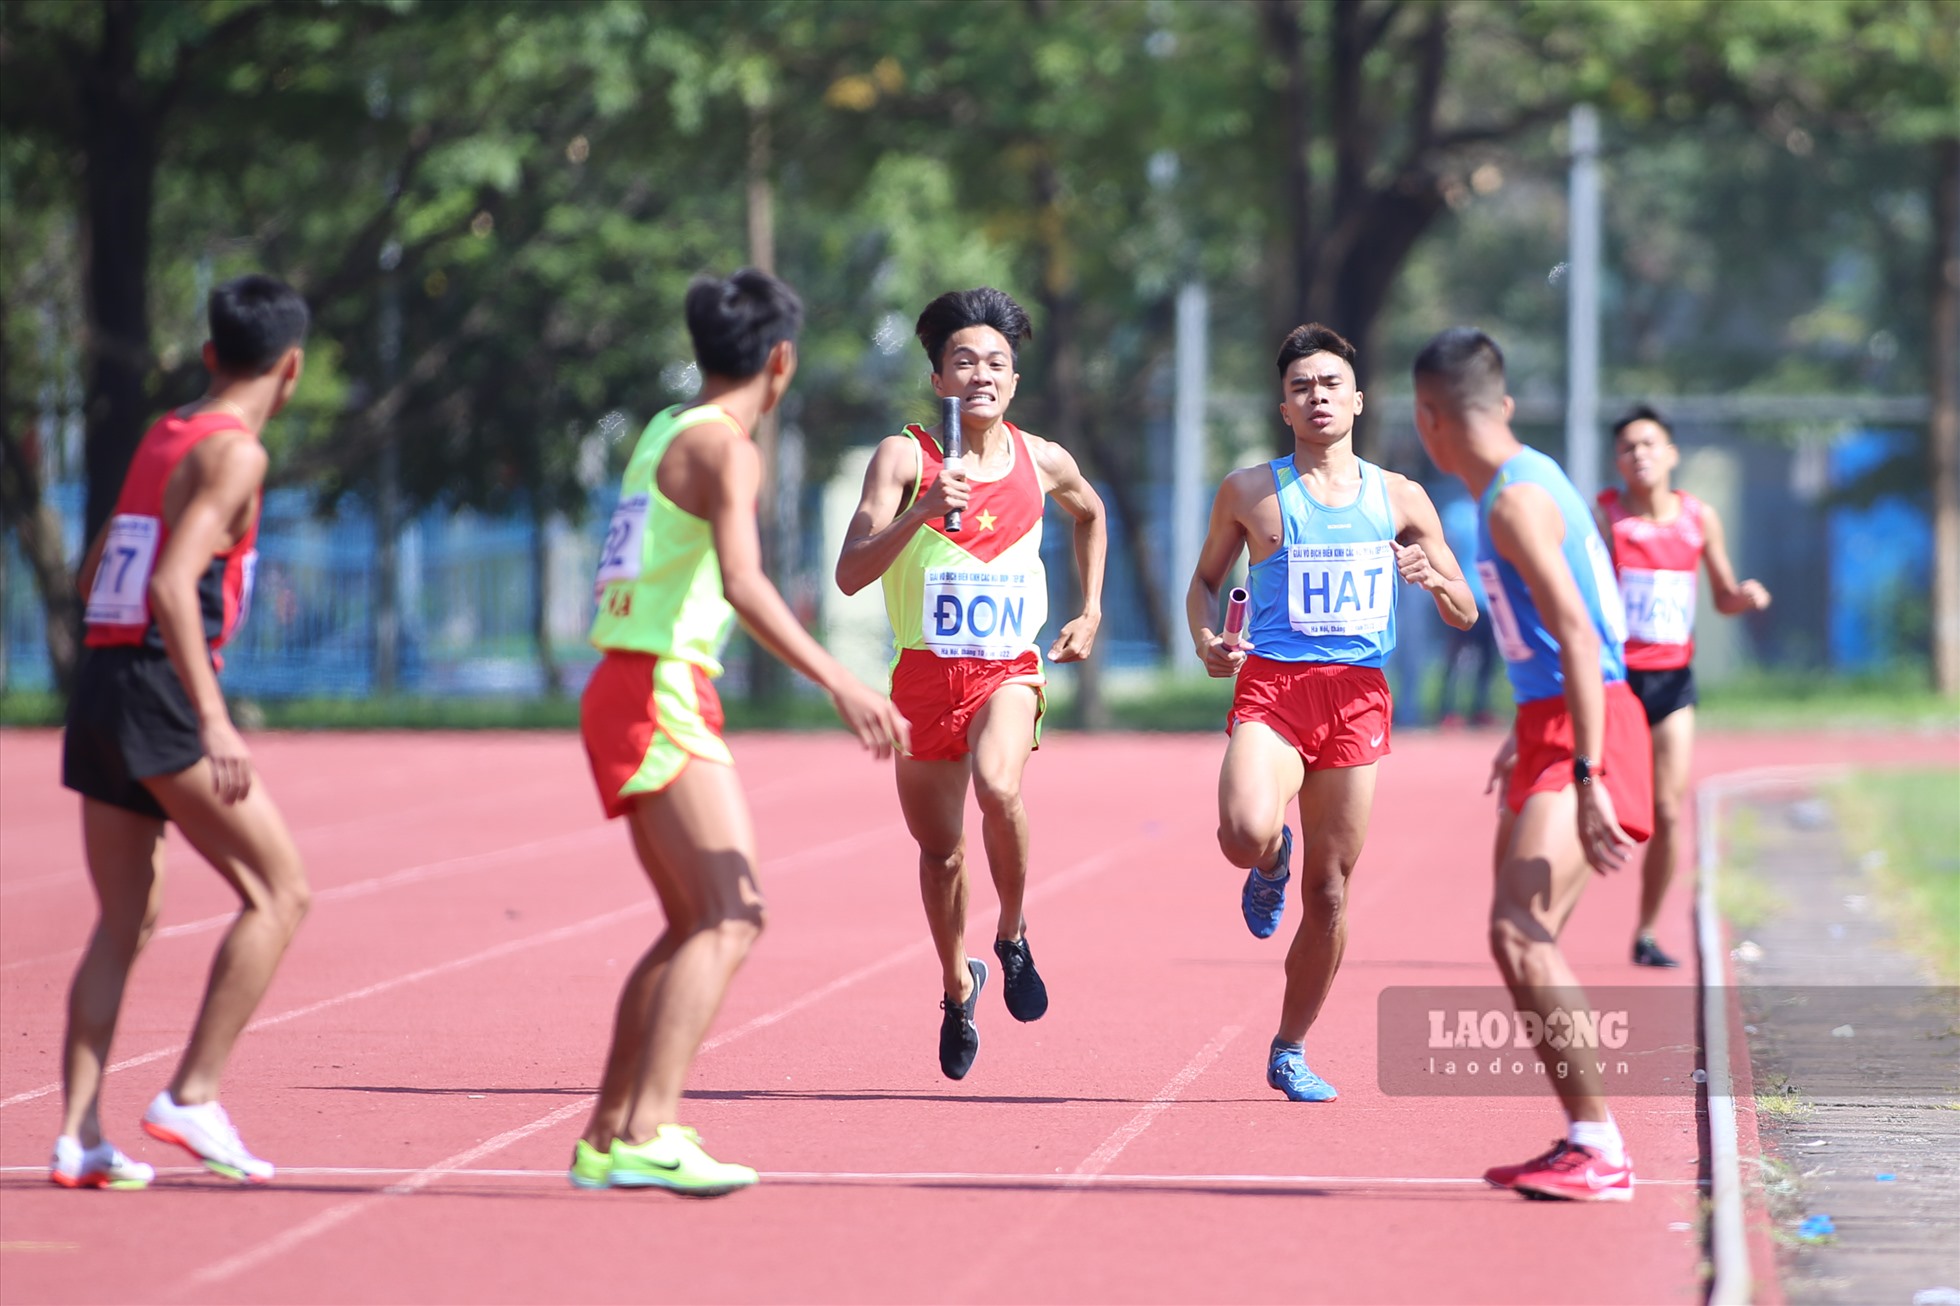 Tấm huy chương vàng thuộc về đội Đồng Nai. Lưu Đức Phước - nhà vô địch SEA Games 31 ở nội dung 800m nam cùng đồng đội cán đích với thành tích 7 phút 44 giây 4.